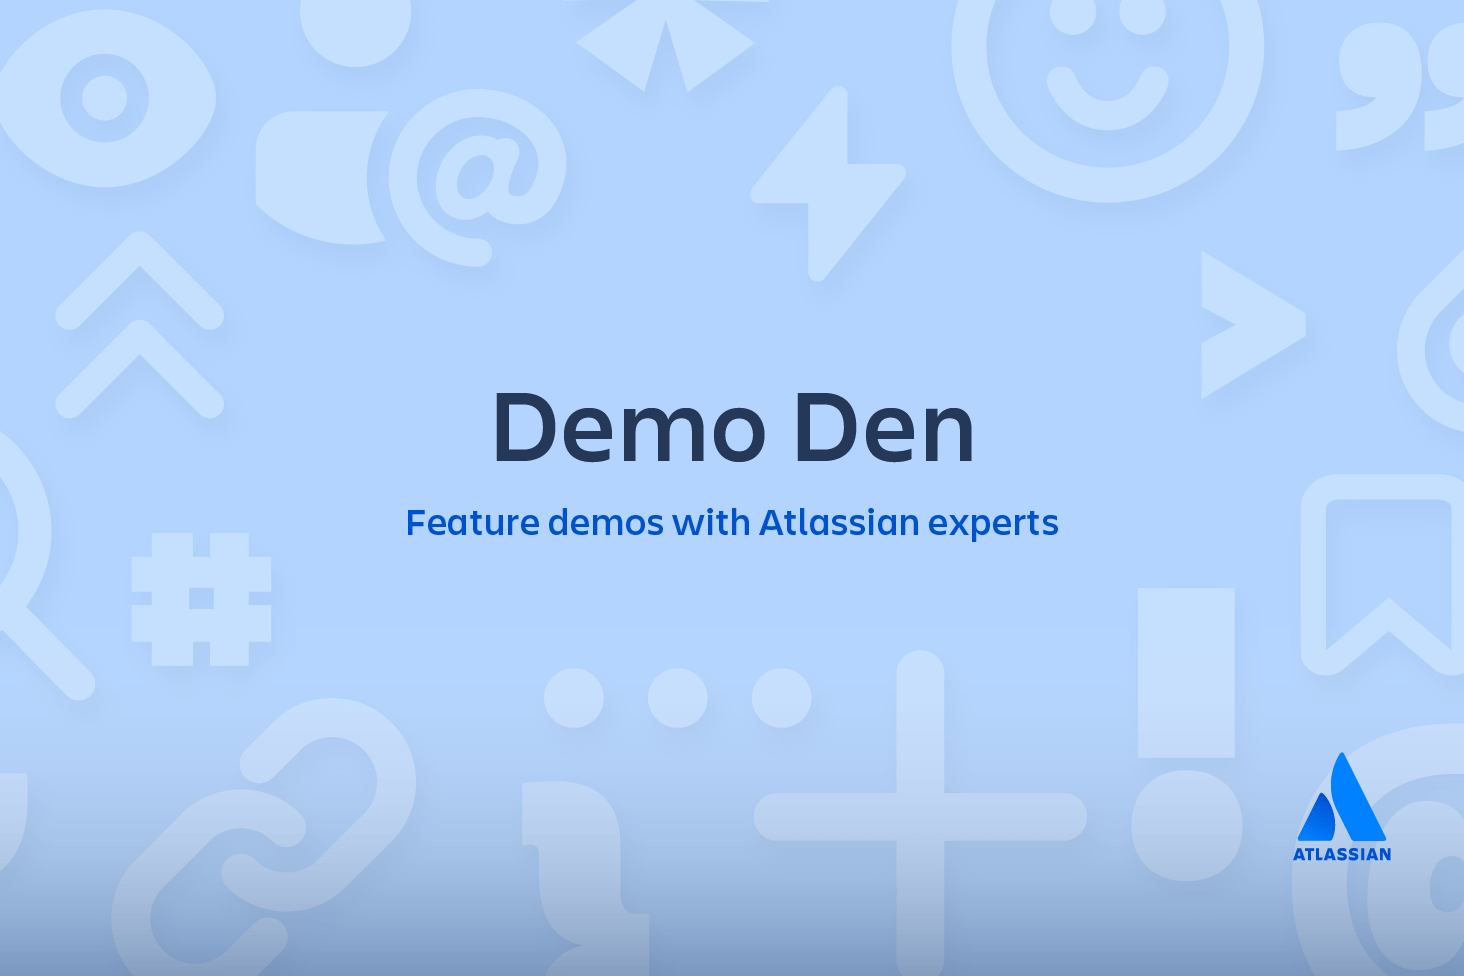 与 Atlassian 专家一起进行 Den 功能演示